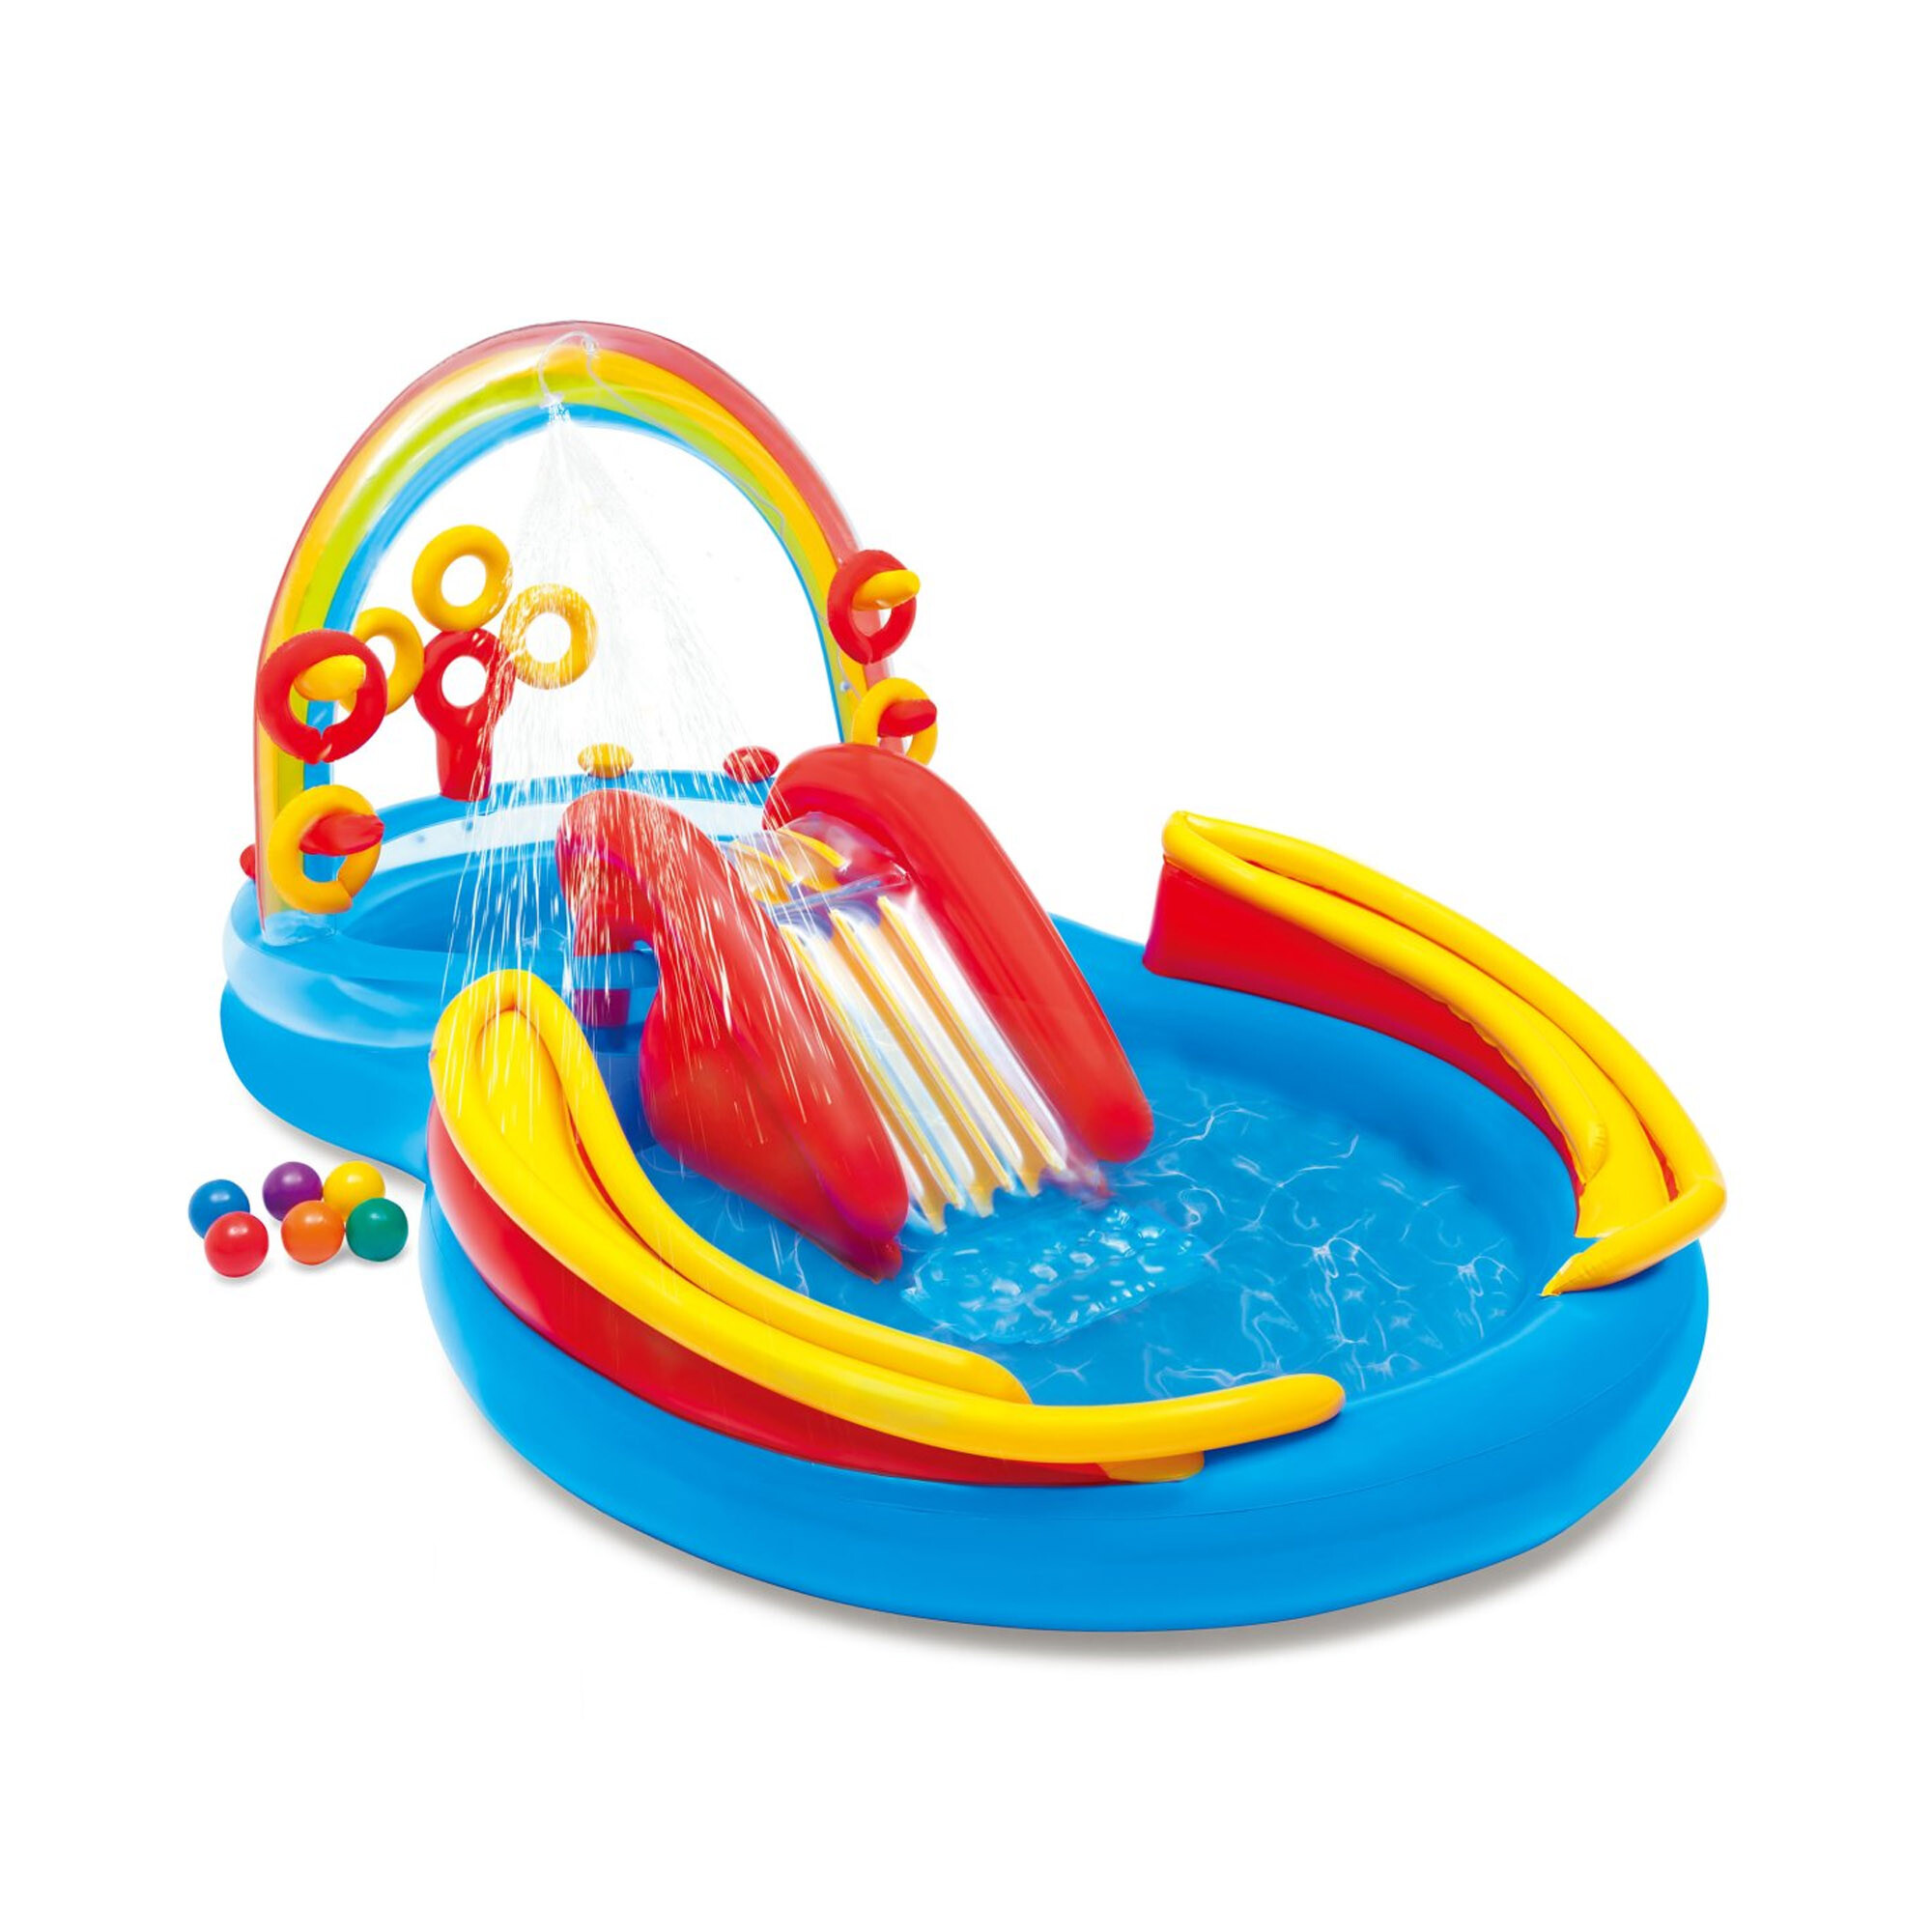 Intex - playground arcobaleno piscina gonfiabile, con palline, multicolore, 297x193x135 cm - INTEX